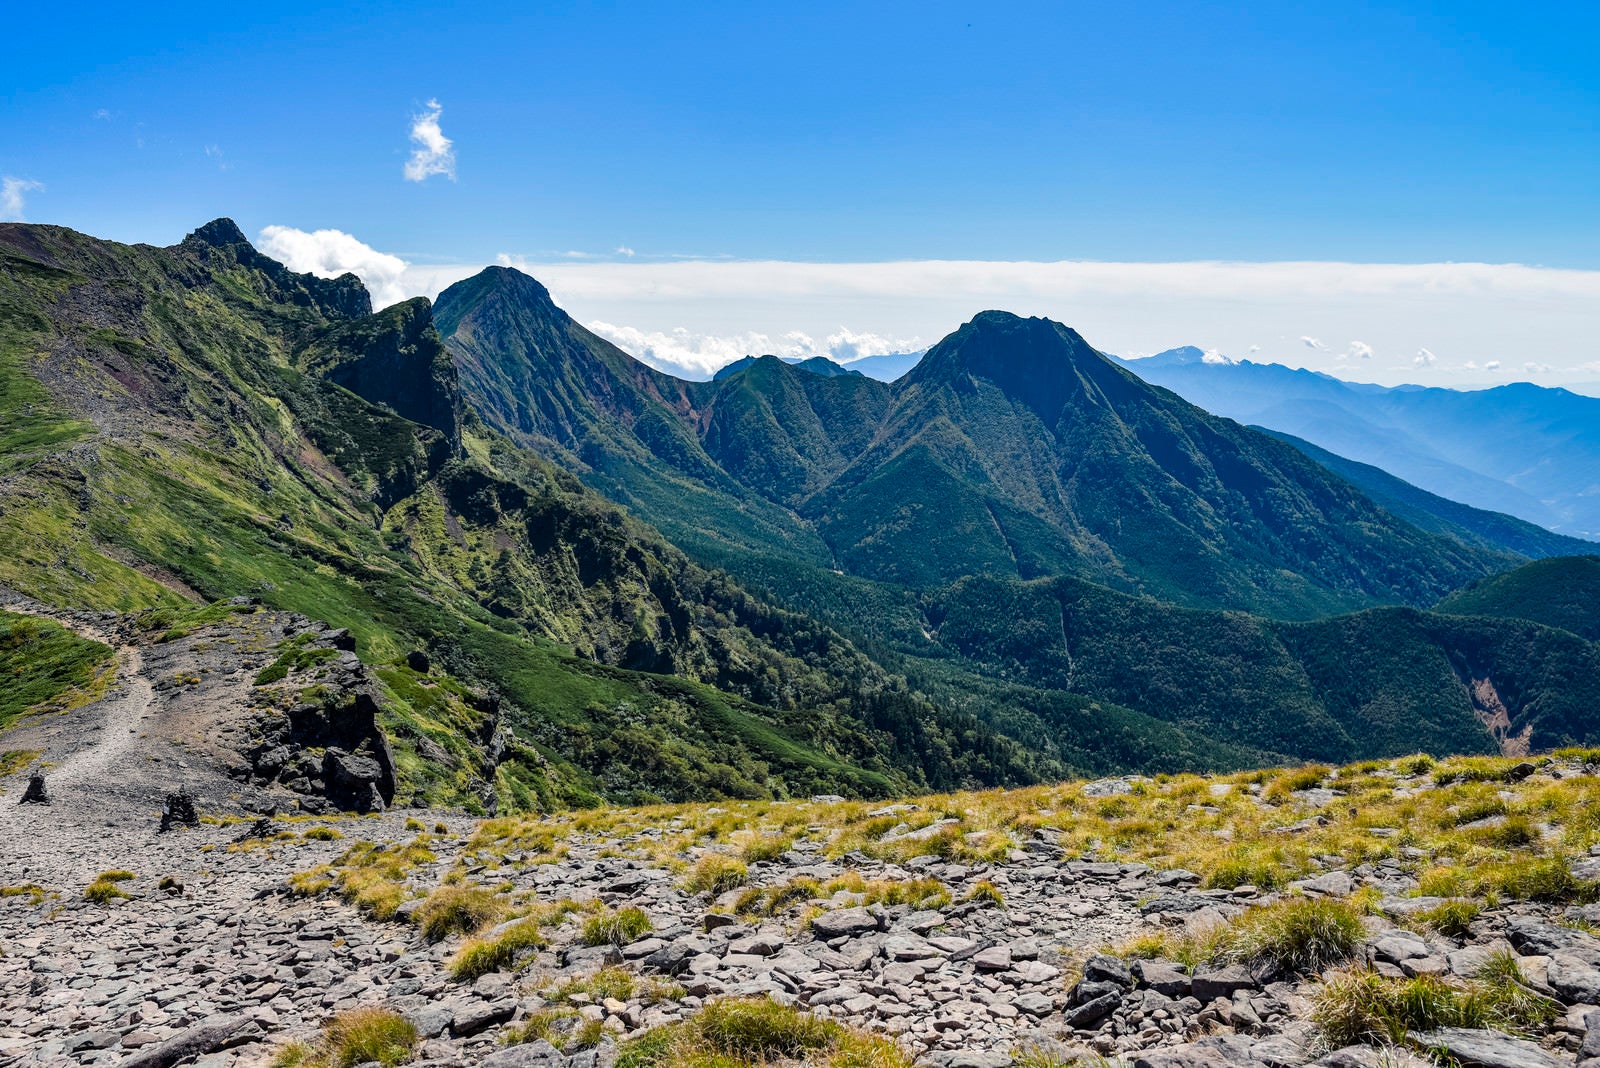 「硫黄岳からみる横岳と赤岳方面の景色」の写真